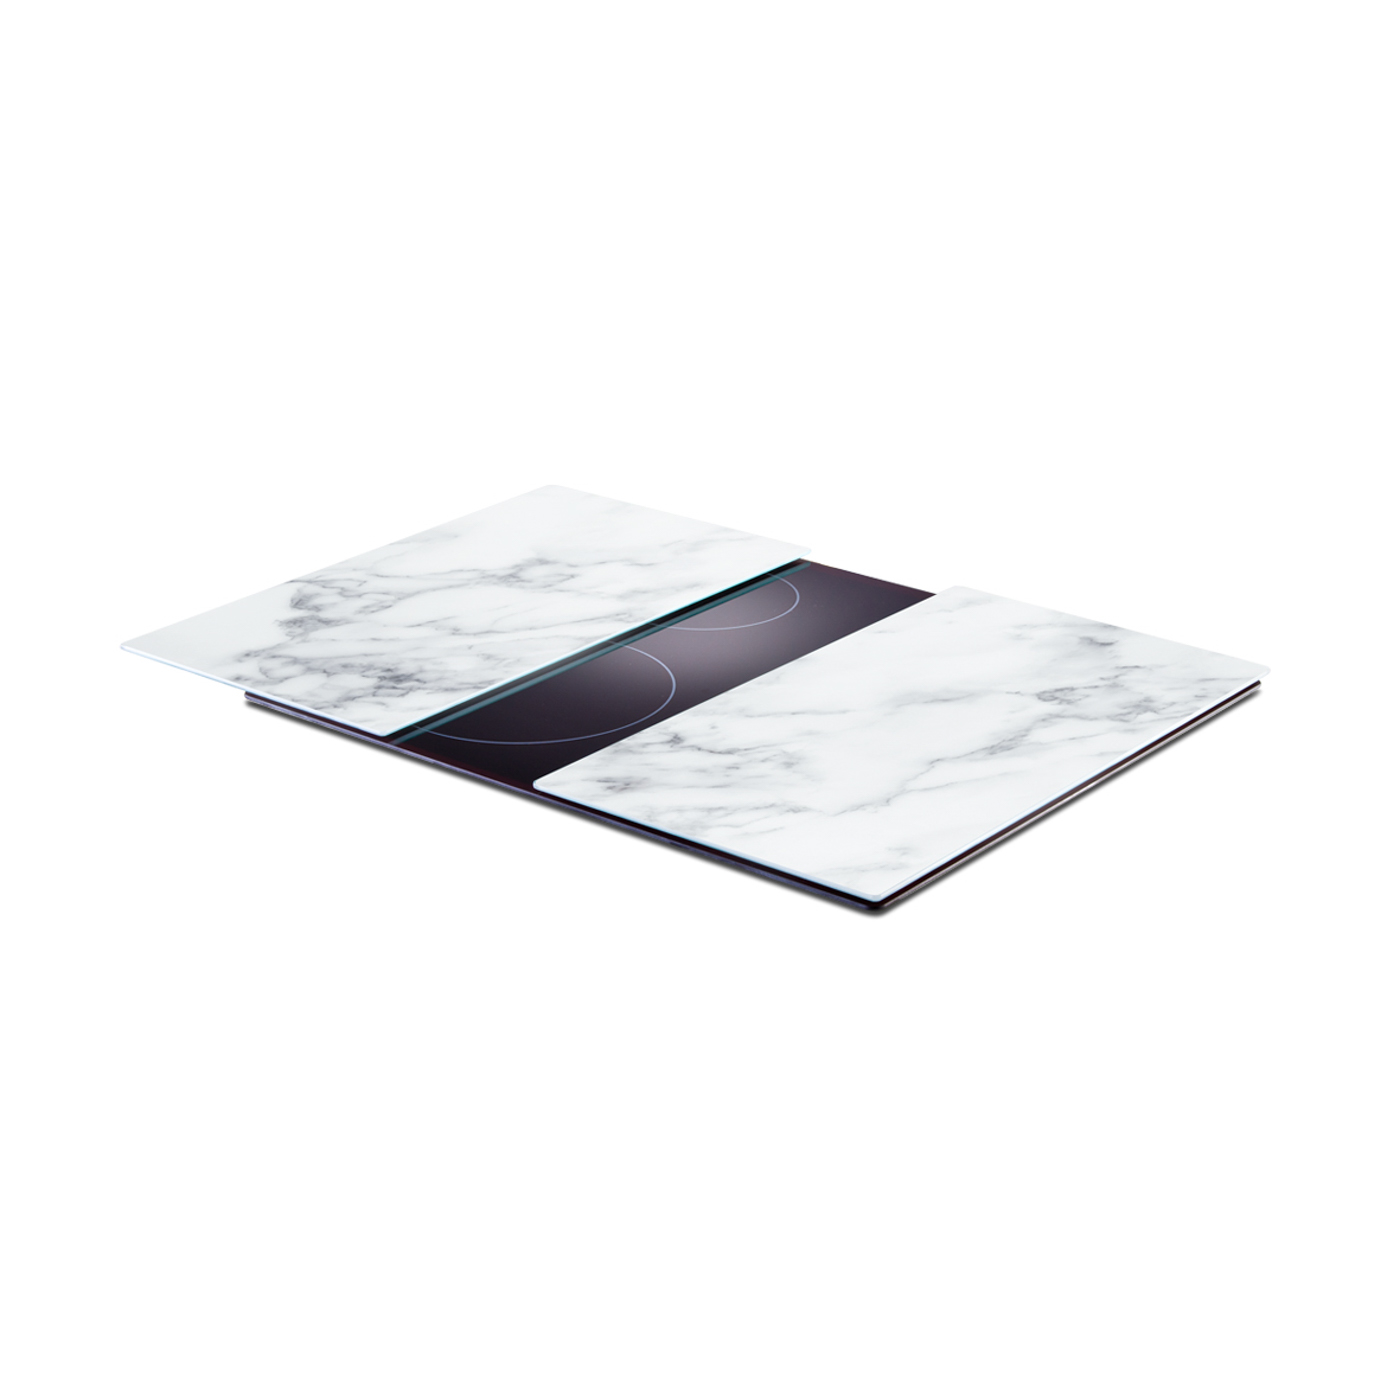 Herdabdeck-/Schneideplatten, Sicherheitsglas, 30x52 cm. Farbe: weiß. Diese modernen Herdabdeck-/Schneideplatten aus Sicherheitsglas